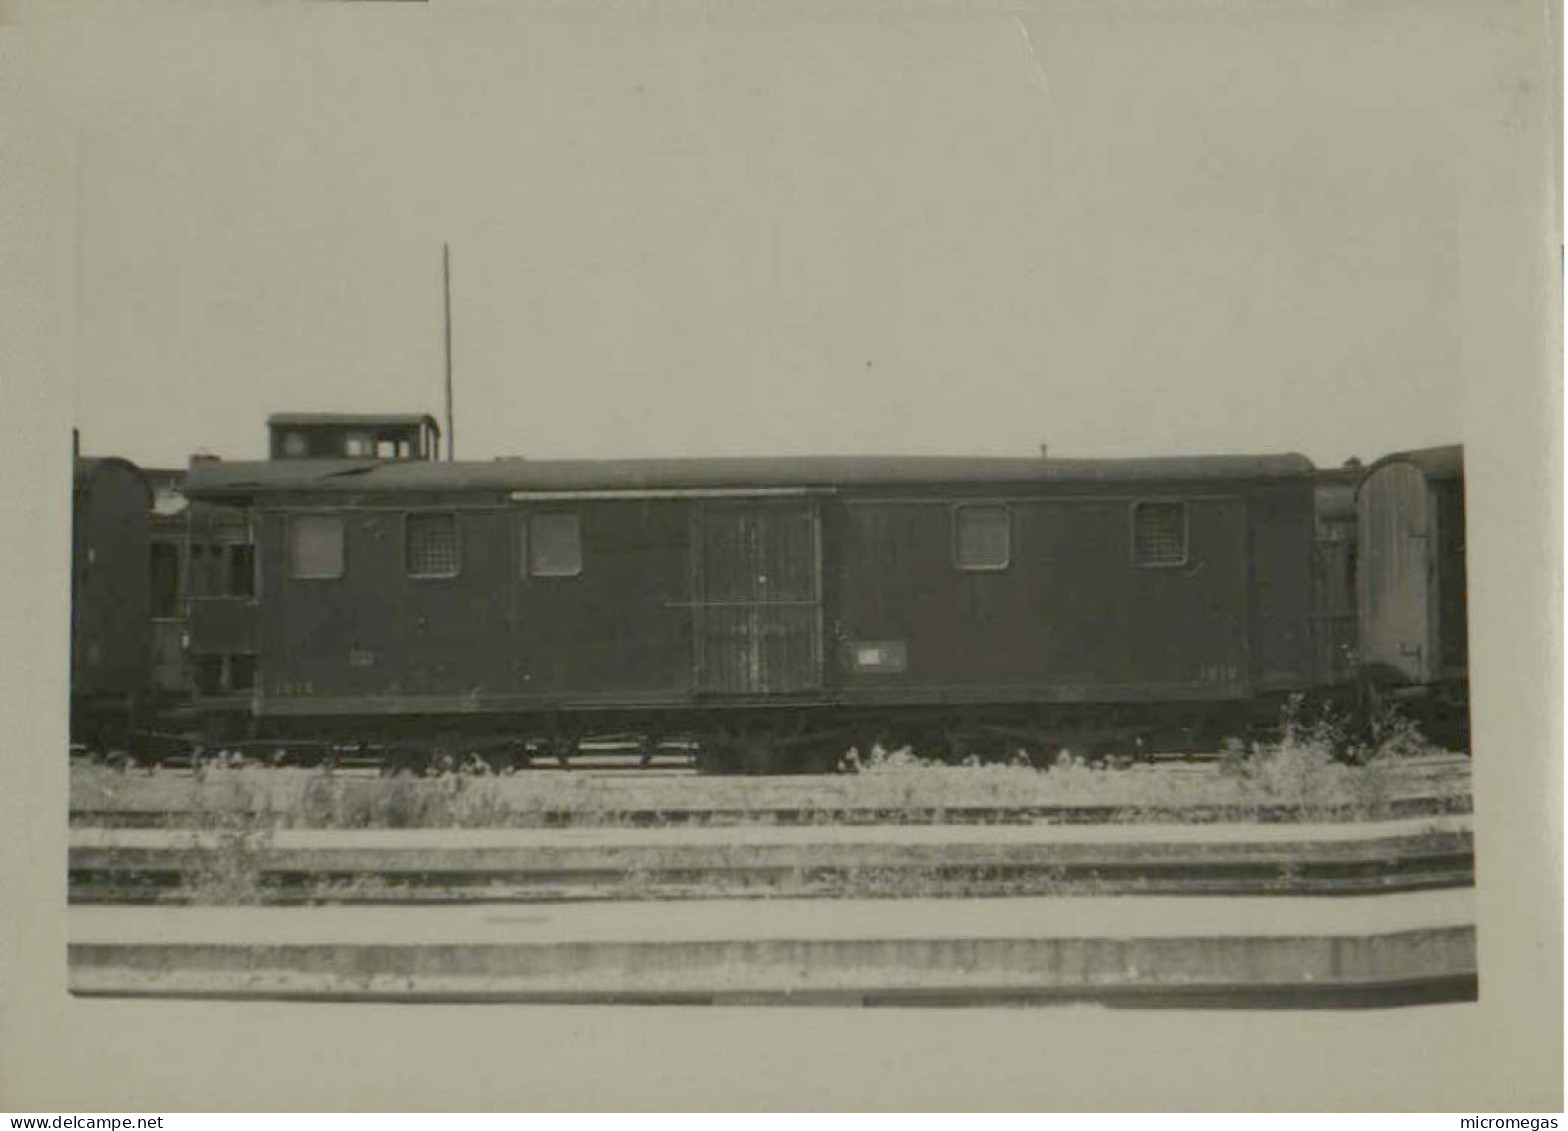 Villeneuve-Saint-Georges - Fourgon Wagon-Lit 3 Essieux N° 1010 - Photo 4-7-1948, 6 X 6.5 Cm. - Trains